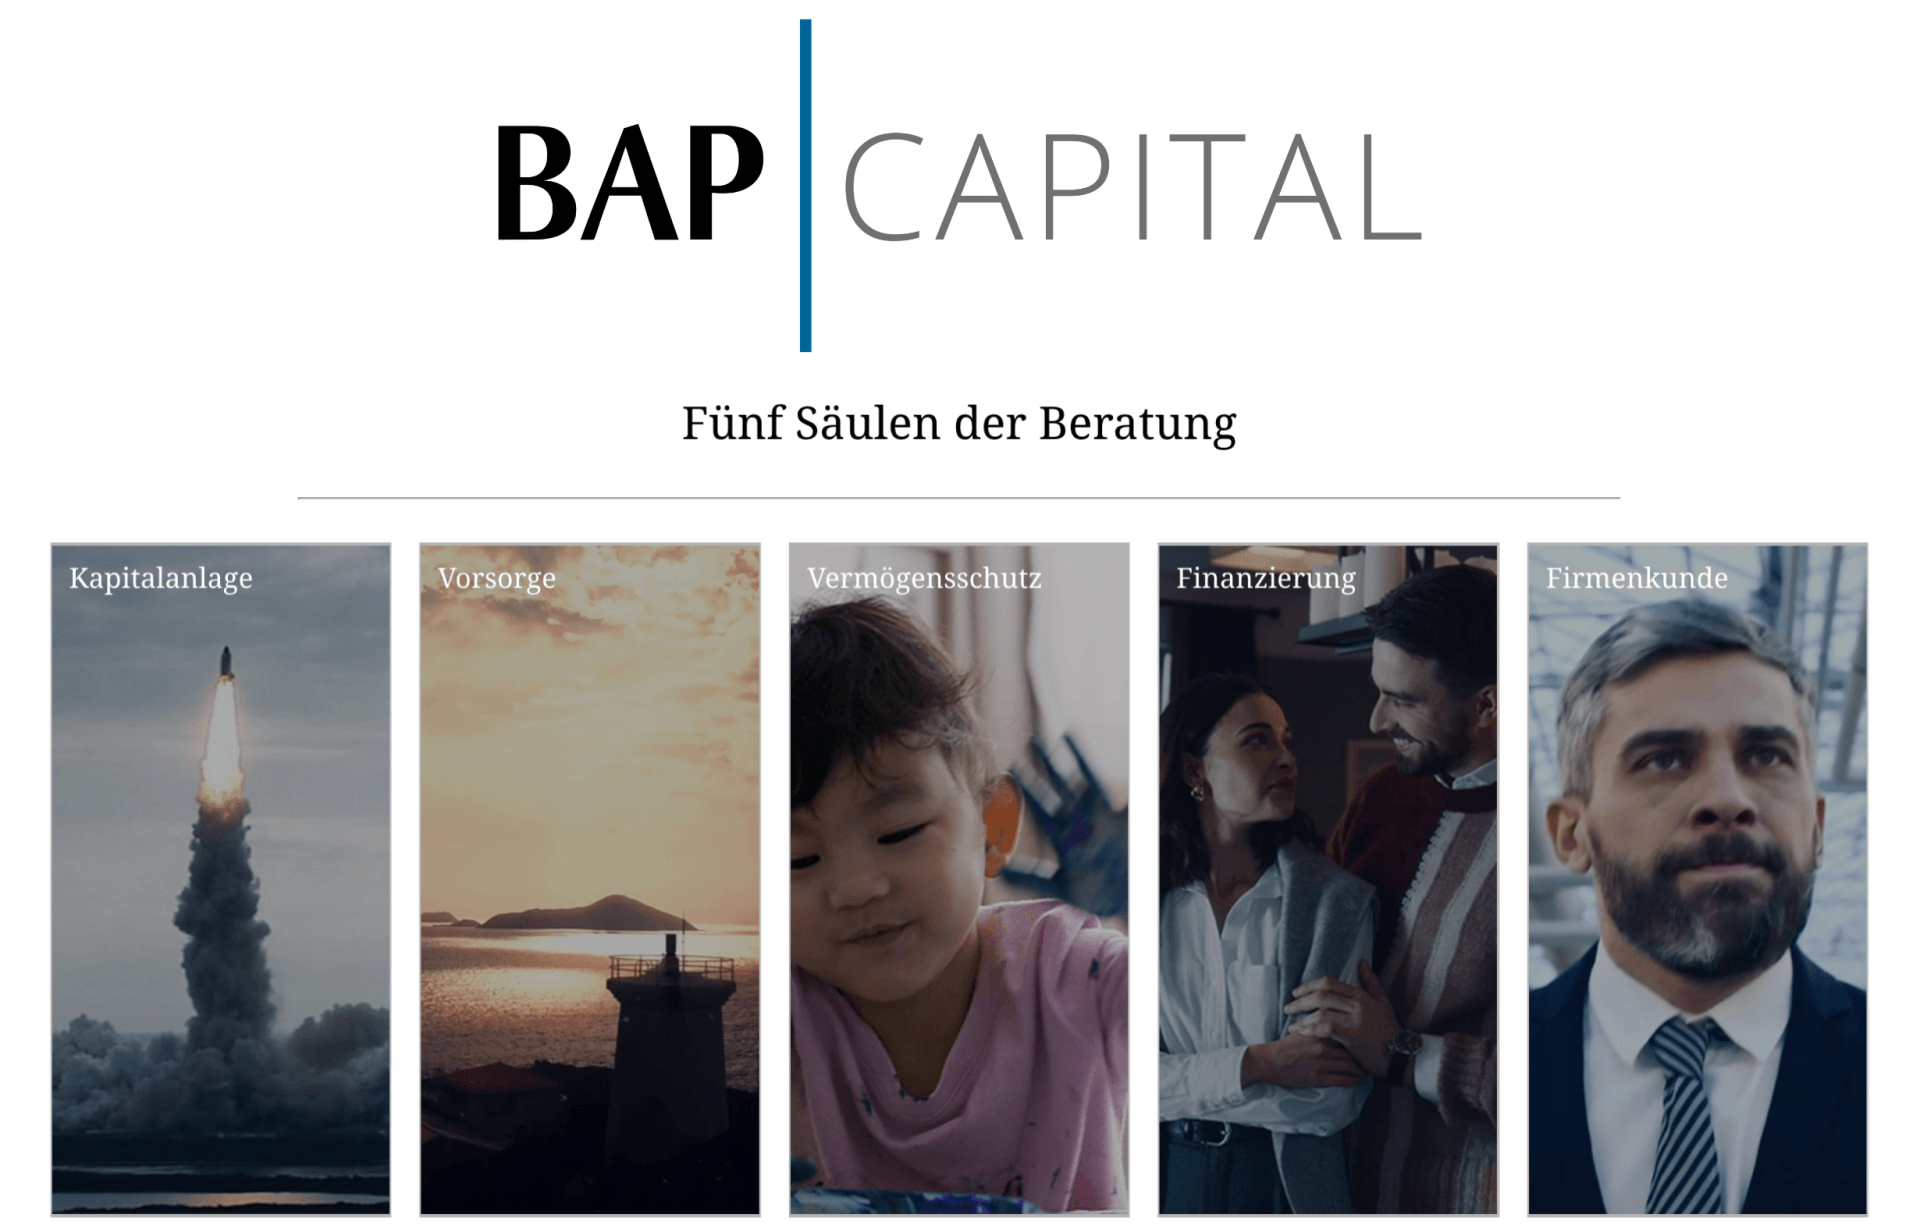 BAP Capital